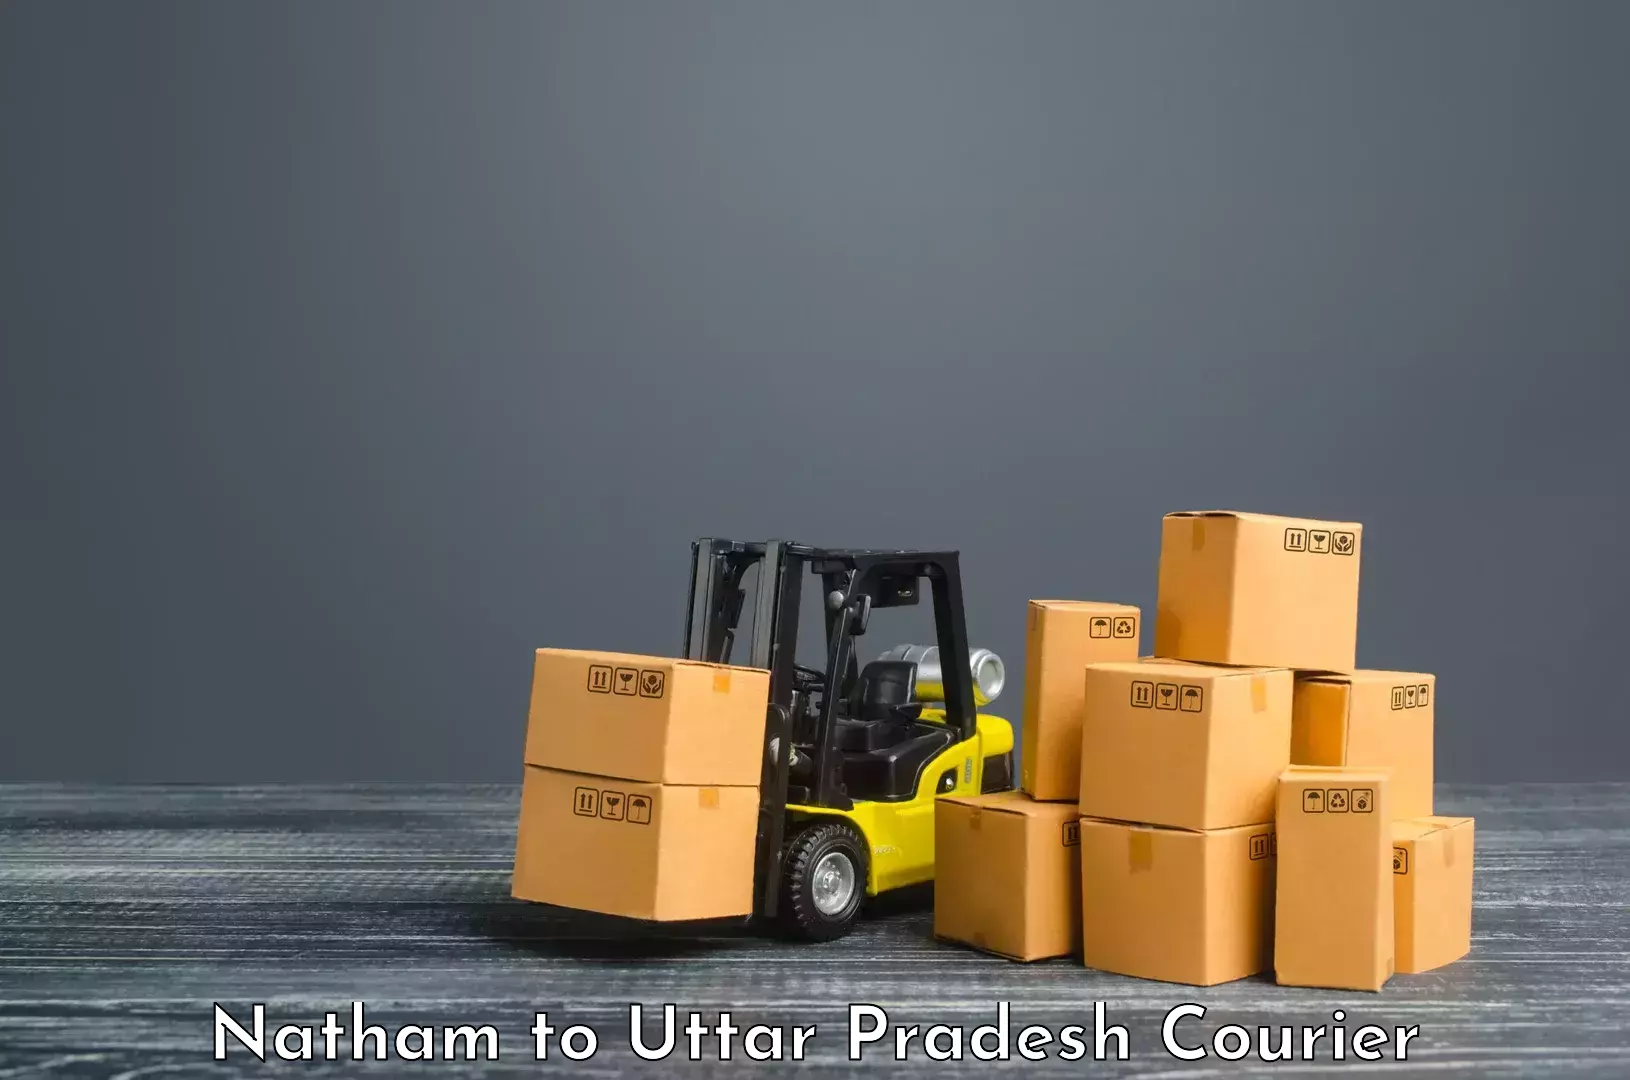 Parcel handling and care Natham to Tilhar